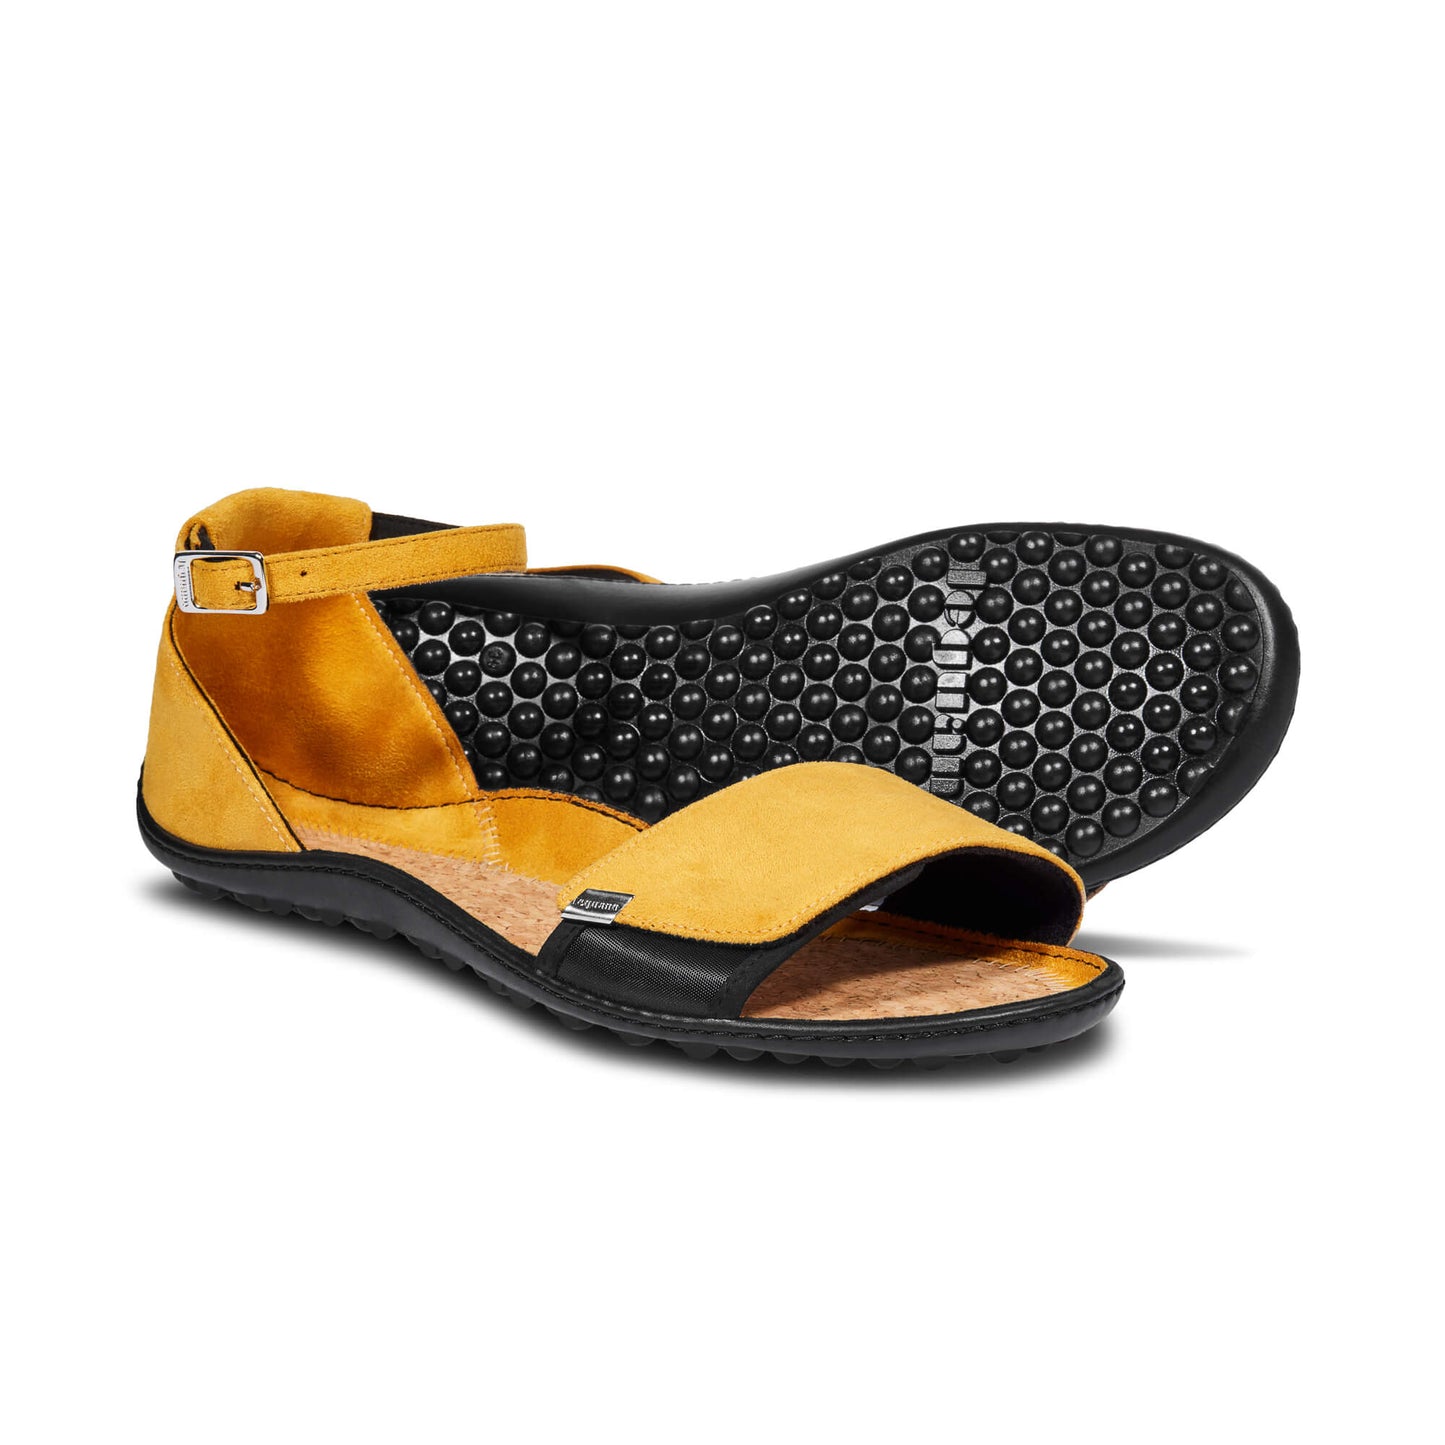 Leguano Jara barfods sandaler til kvinder i farven yellow, par